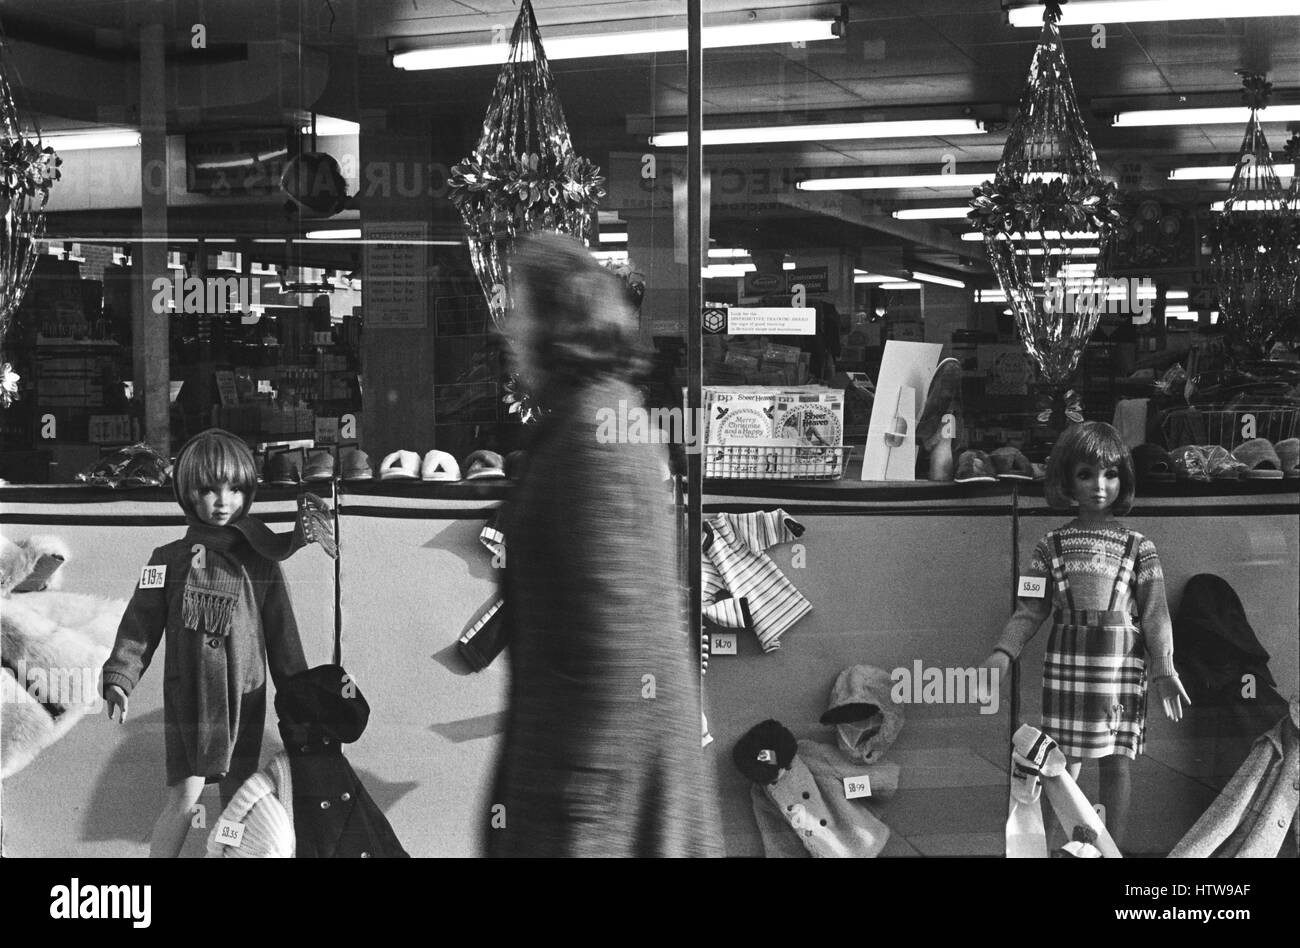 Archiv Bild eines weiblichen Shopper vorbei Weihnachten Anzeige von Kinderbekleidung in einem Kaufhaus Schaufenster, Lambeth, London, England, 1979, Bewegungsunschärfe Stockfoto